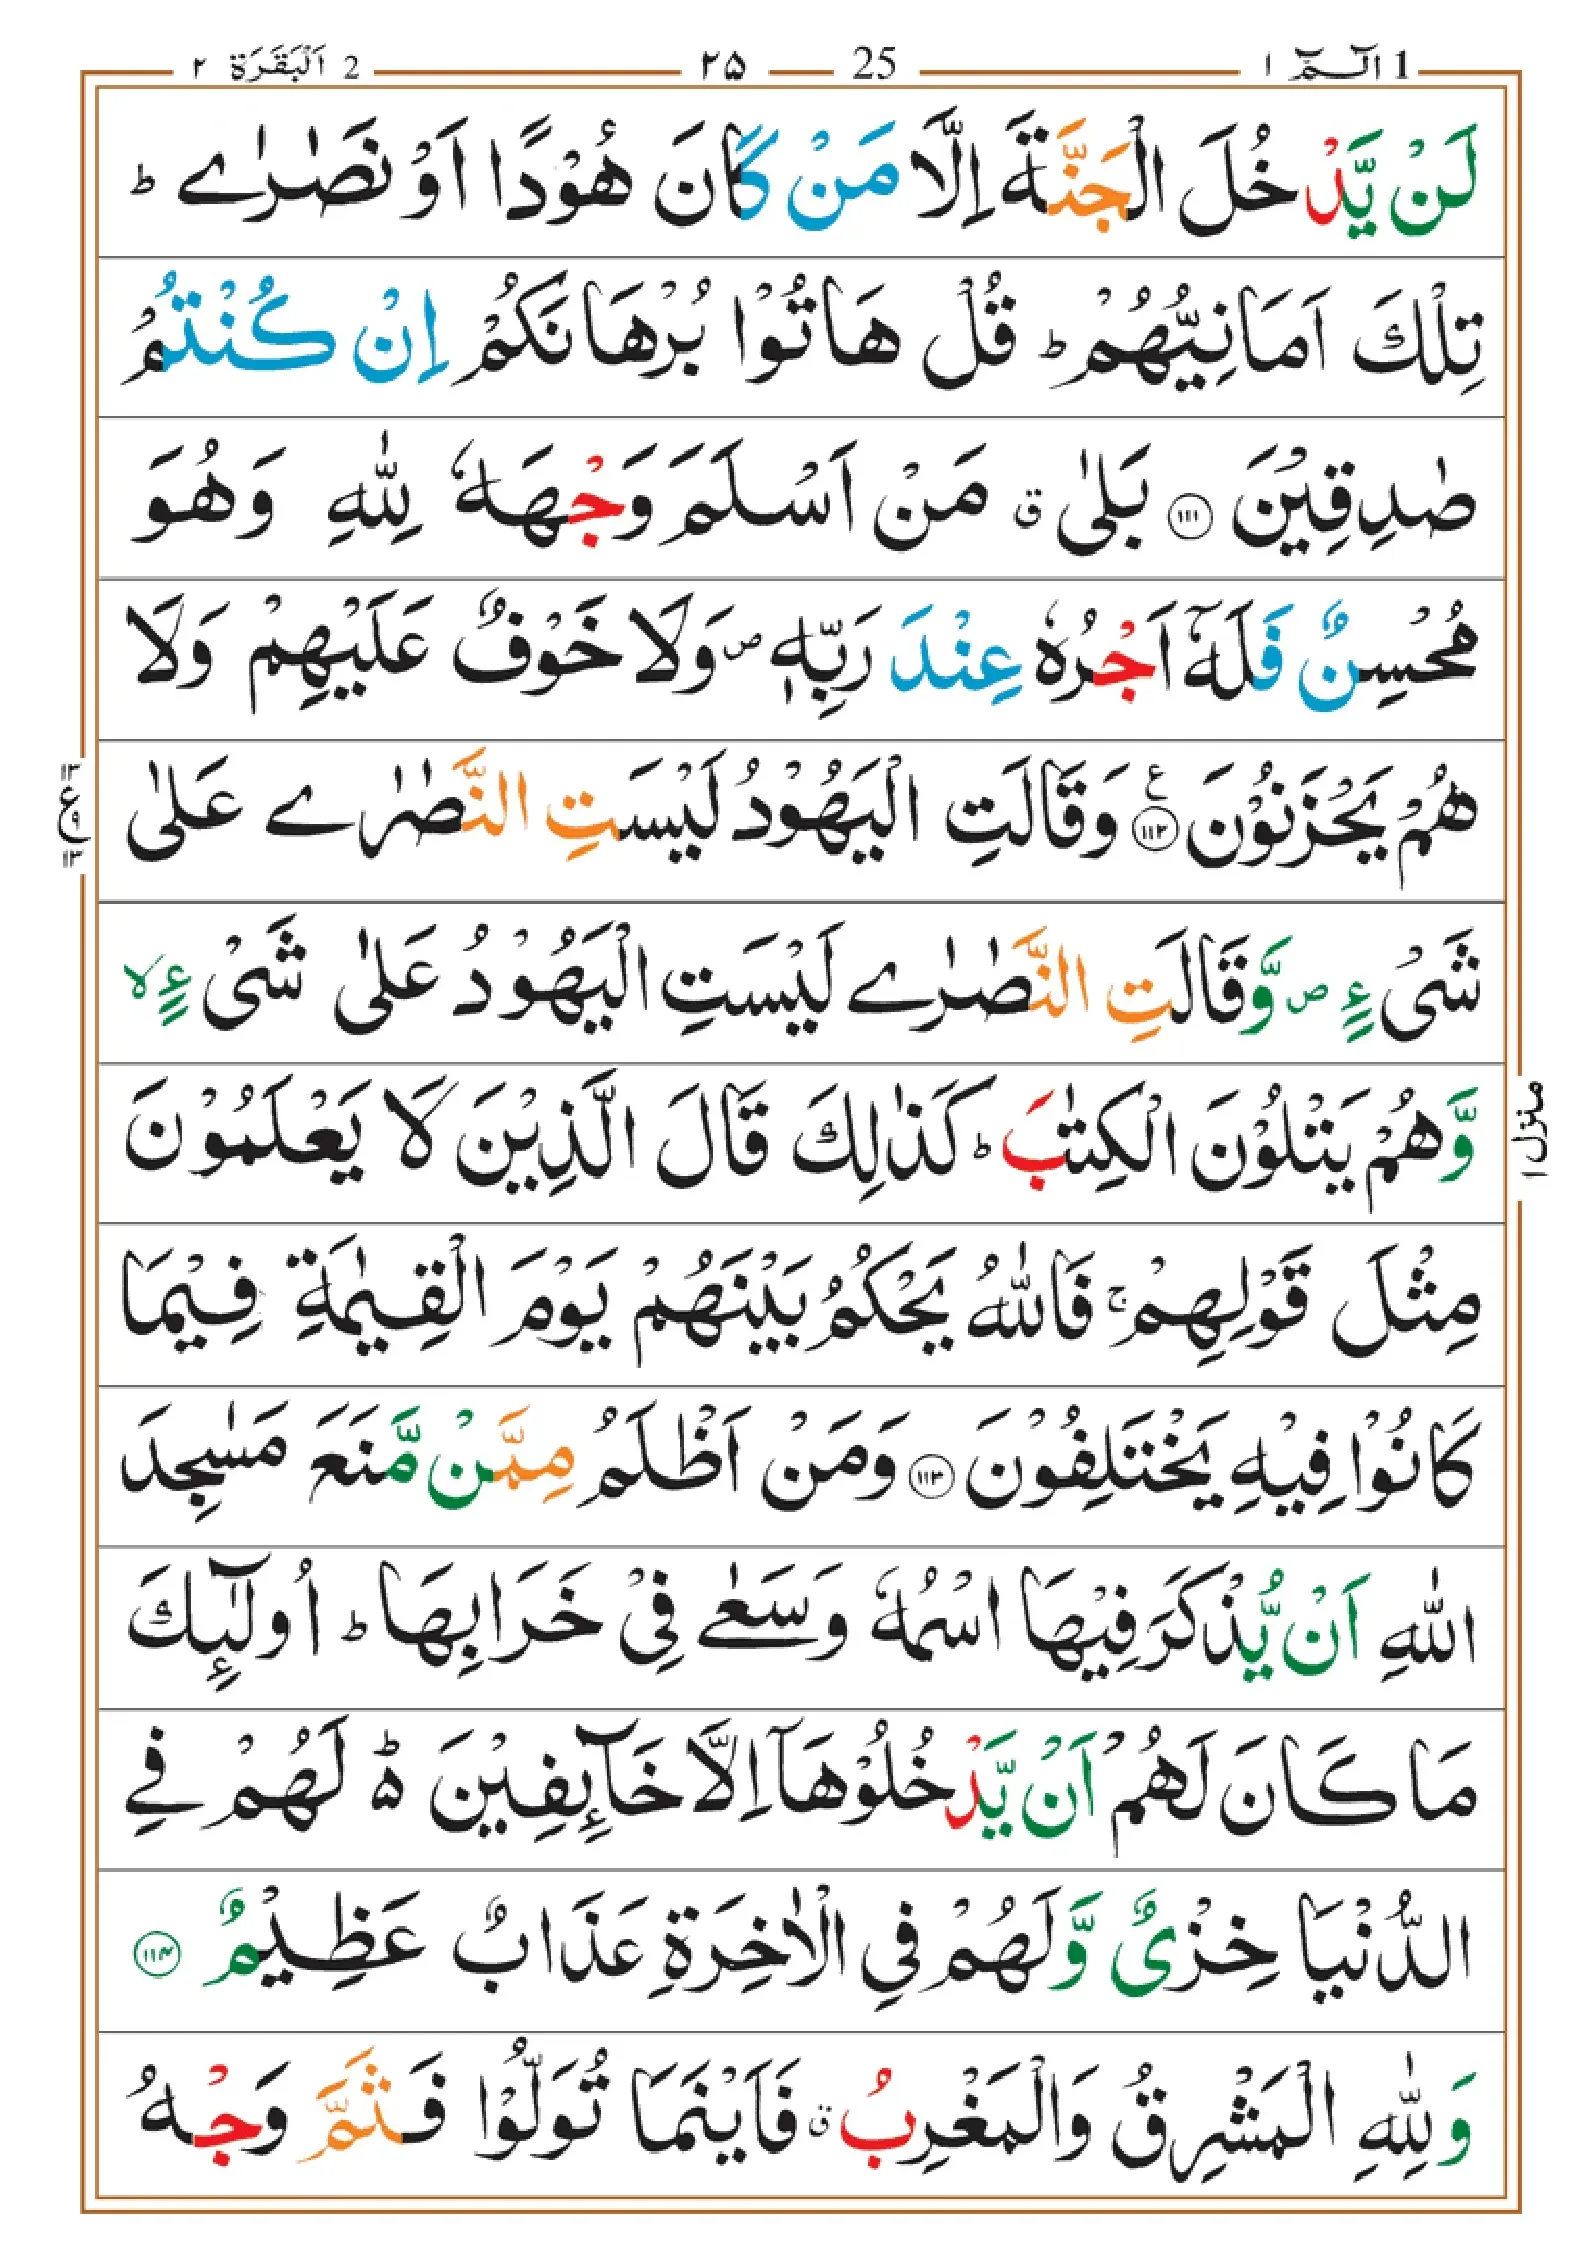 quran-para-1(1)_page-0025